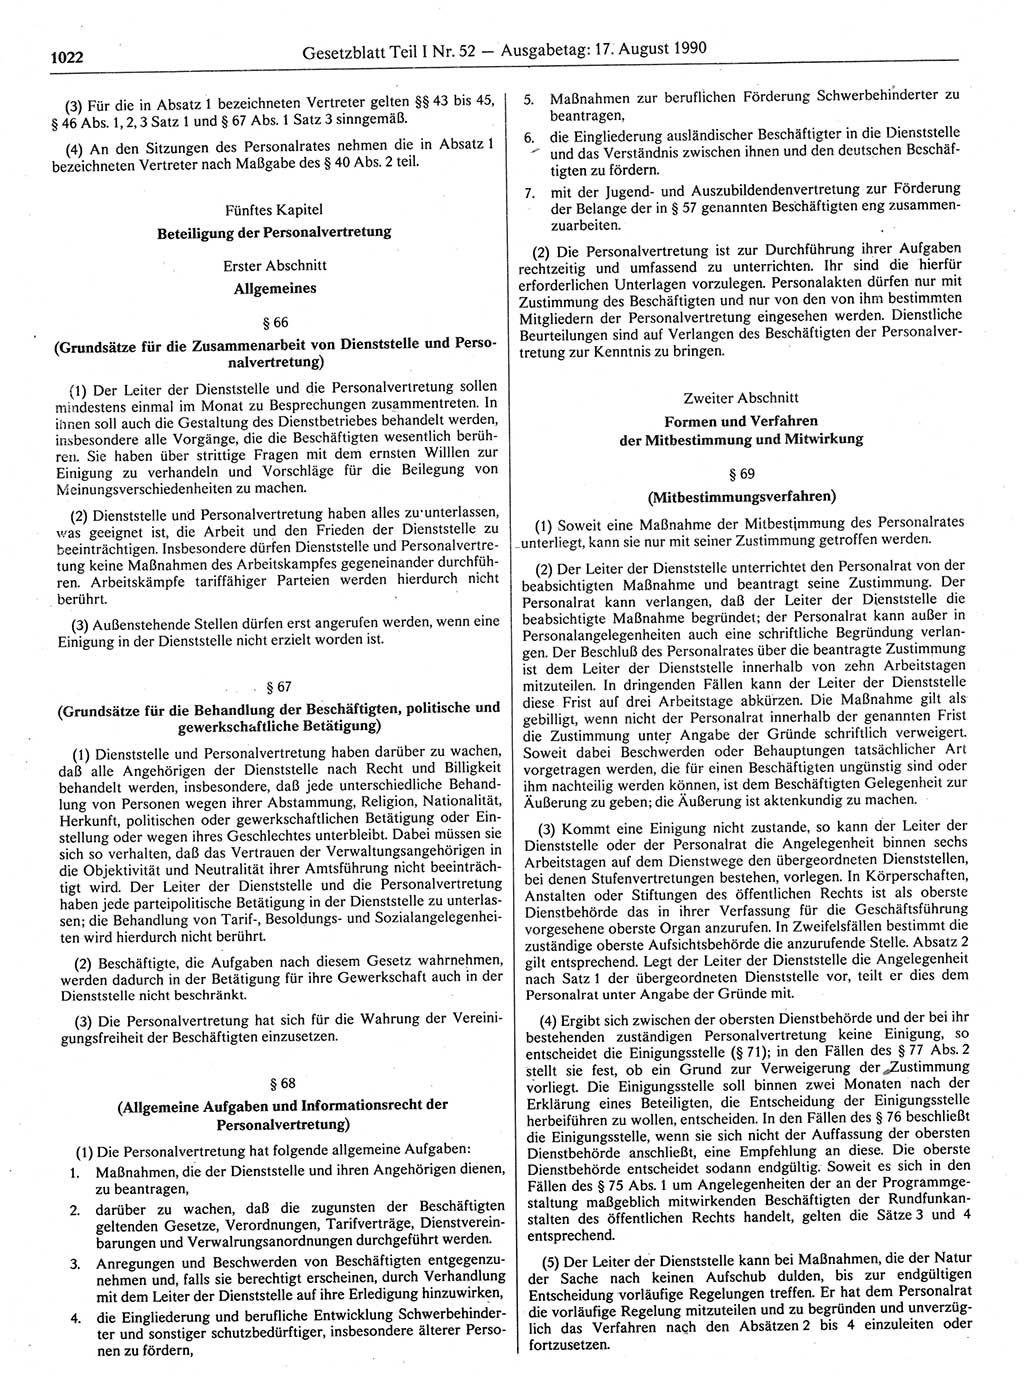 Gesetzblatt (GBl.) der Deutschen Demokratischen Republik (DDR) Teil Ⅰ 1990, Seite 1022 (GBl. DDR Ⅰ 1990, S. 1022)